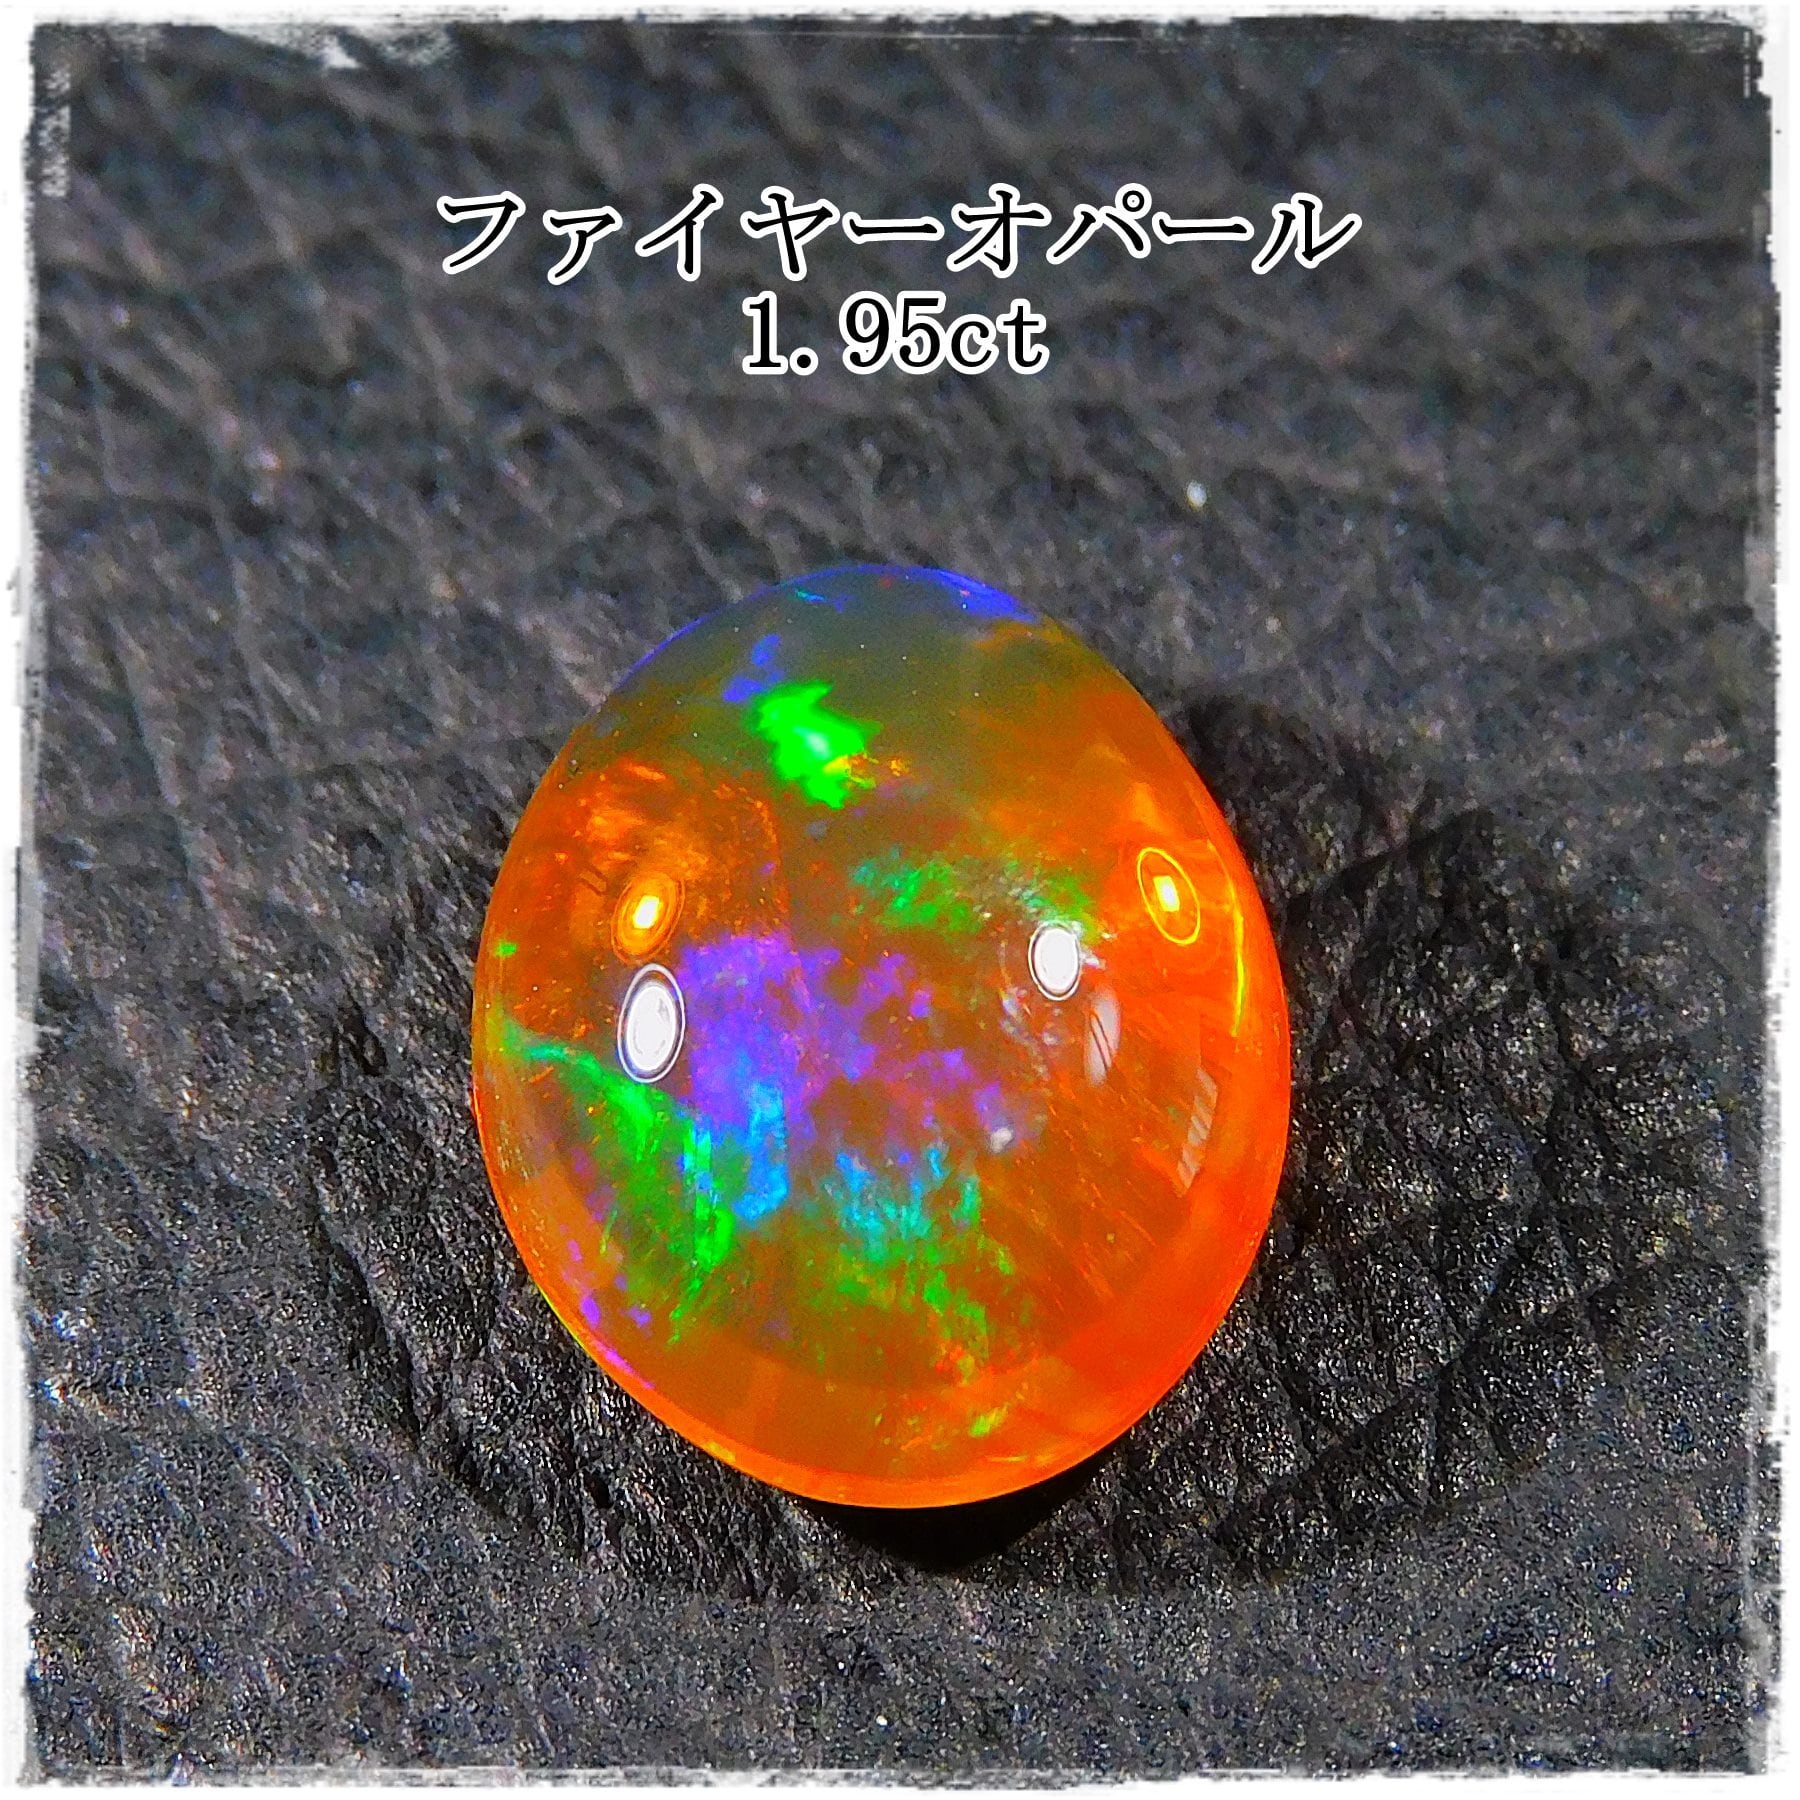 ファイヤーオパール 1.95ct | ganpanda☆彡stone